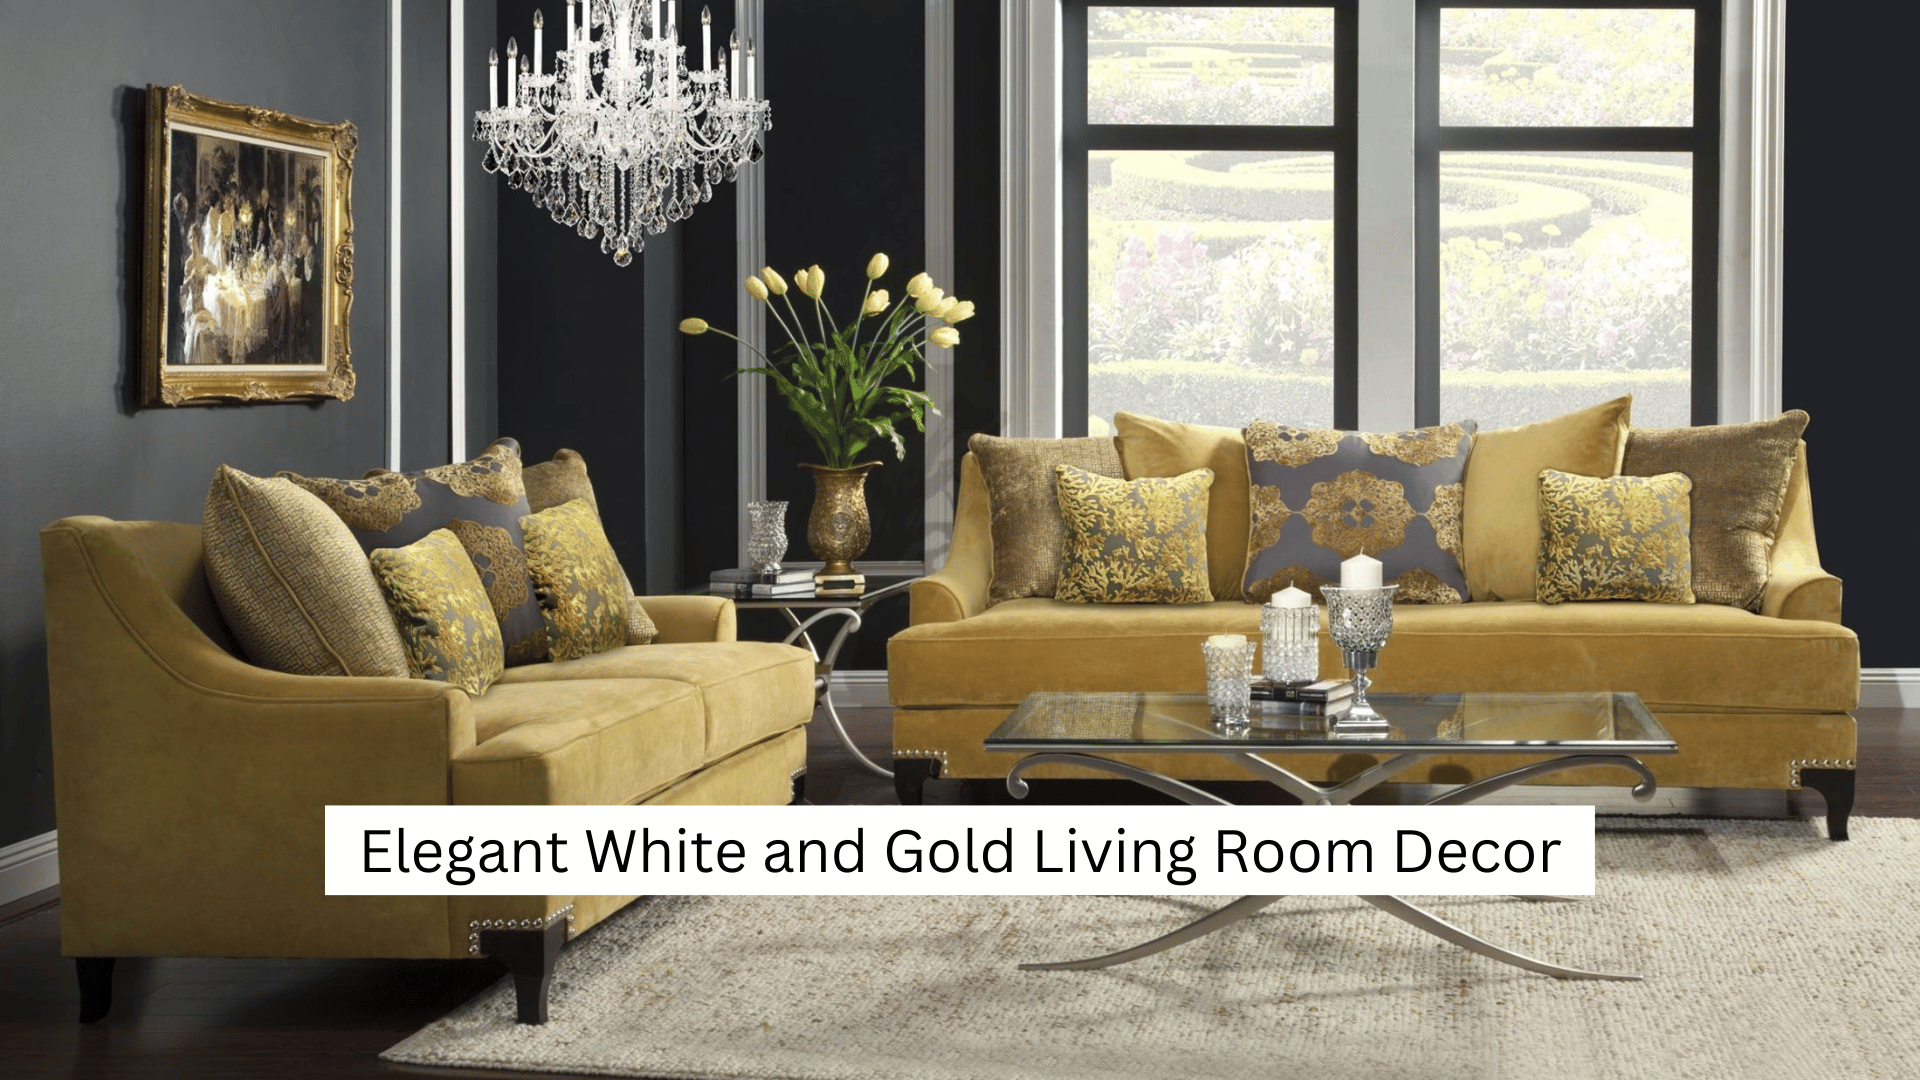 Elegant White and Gold Living Room Decor